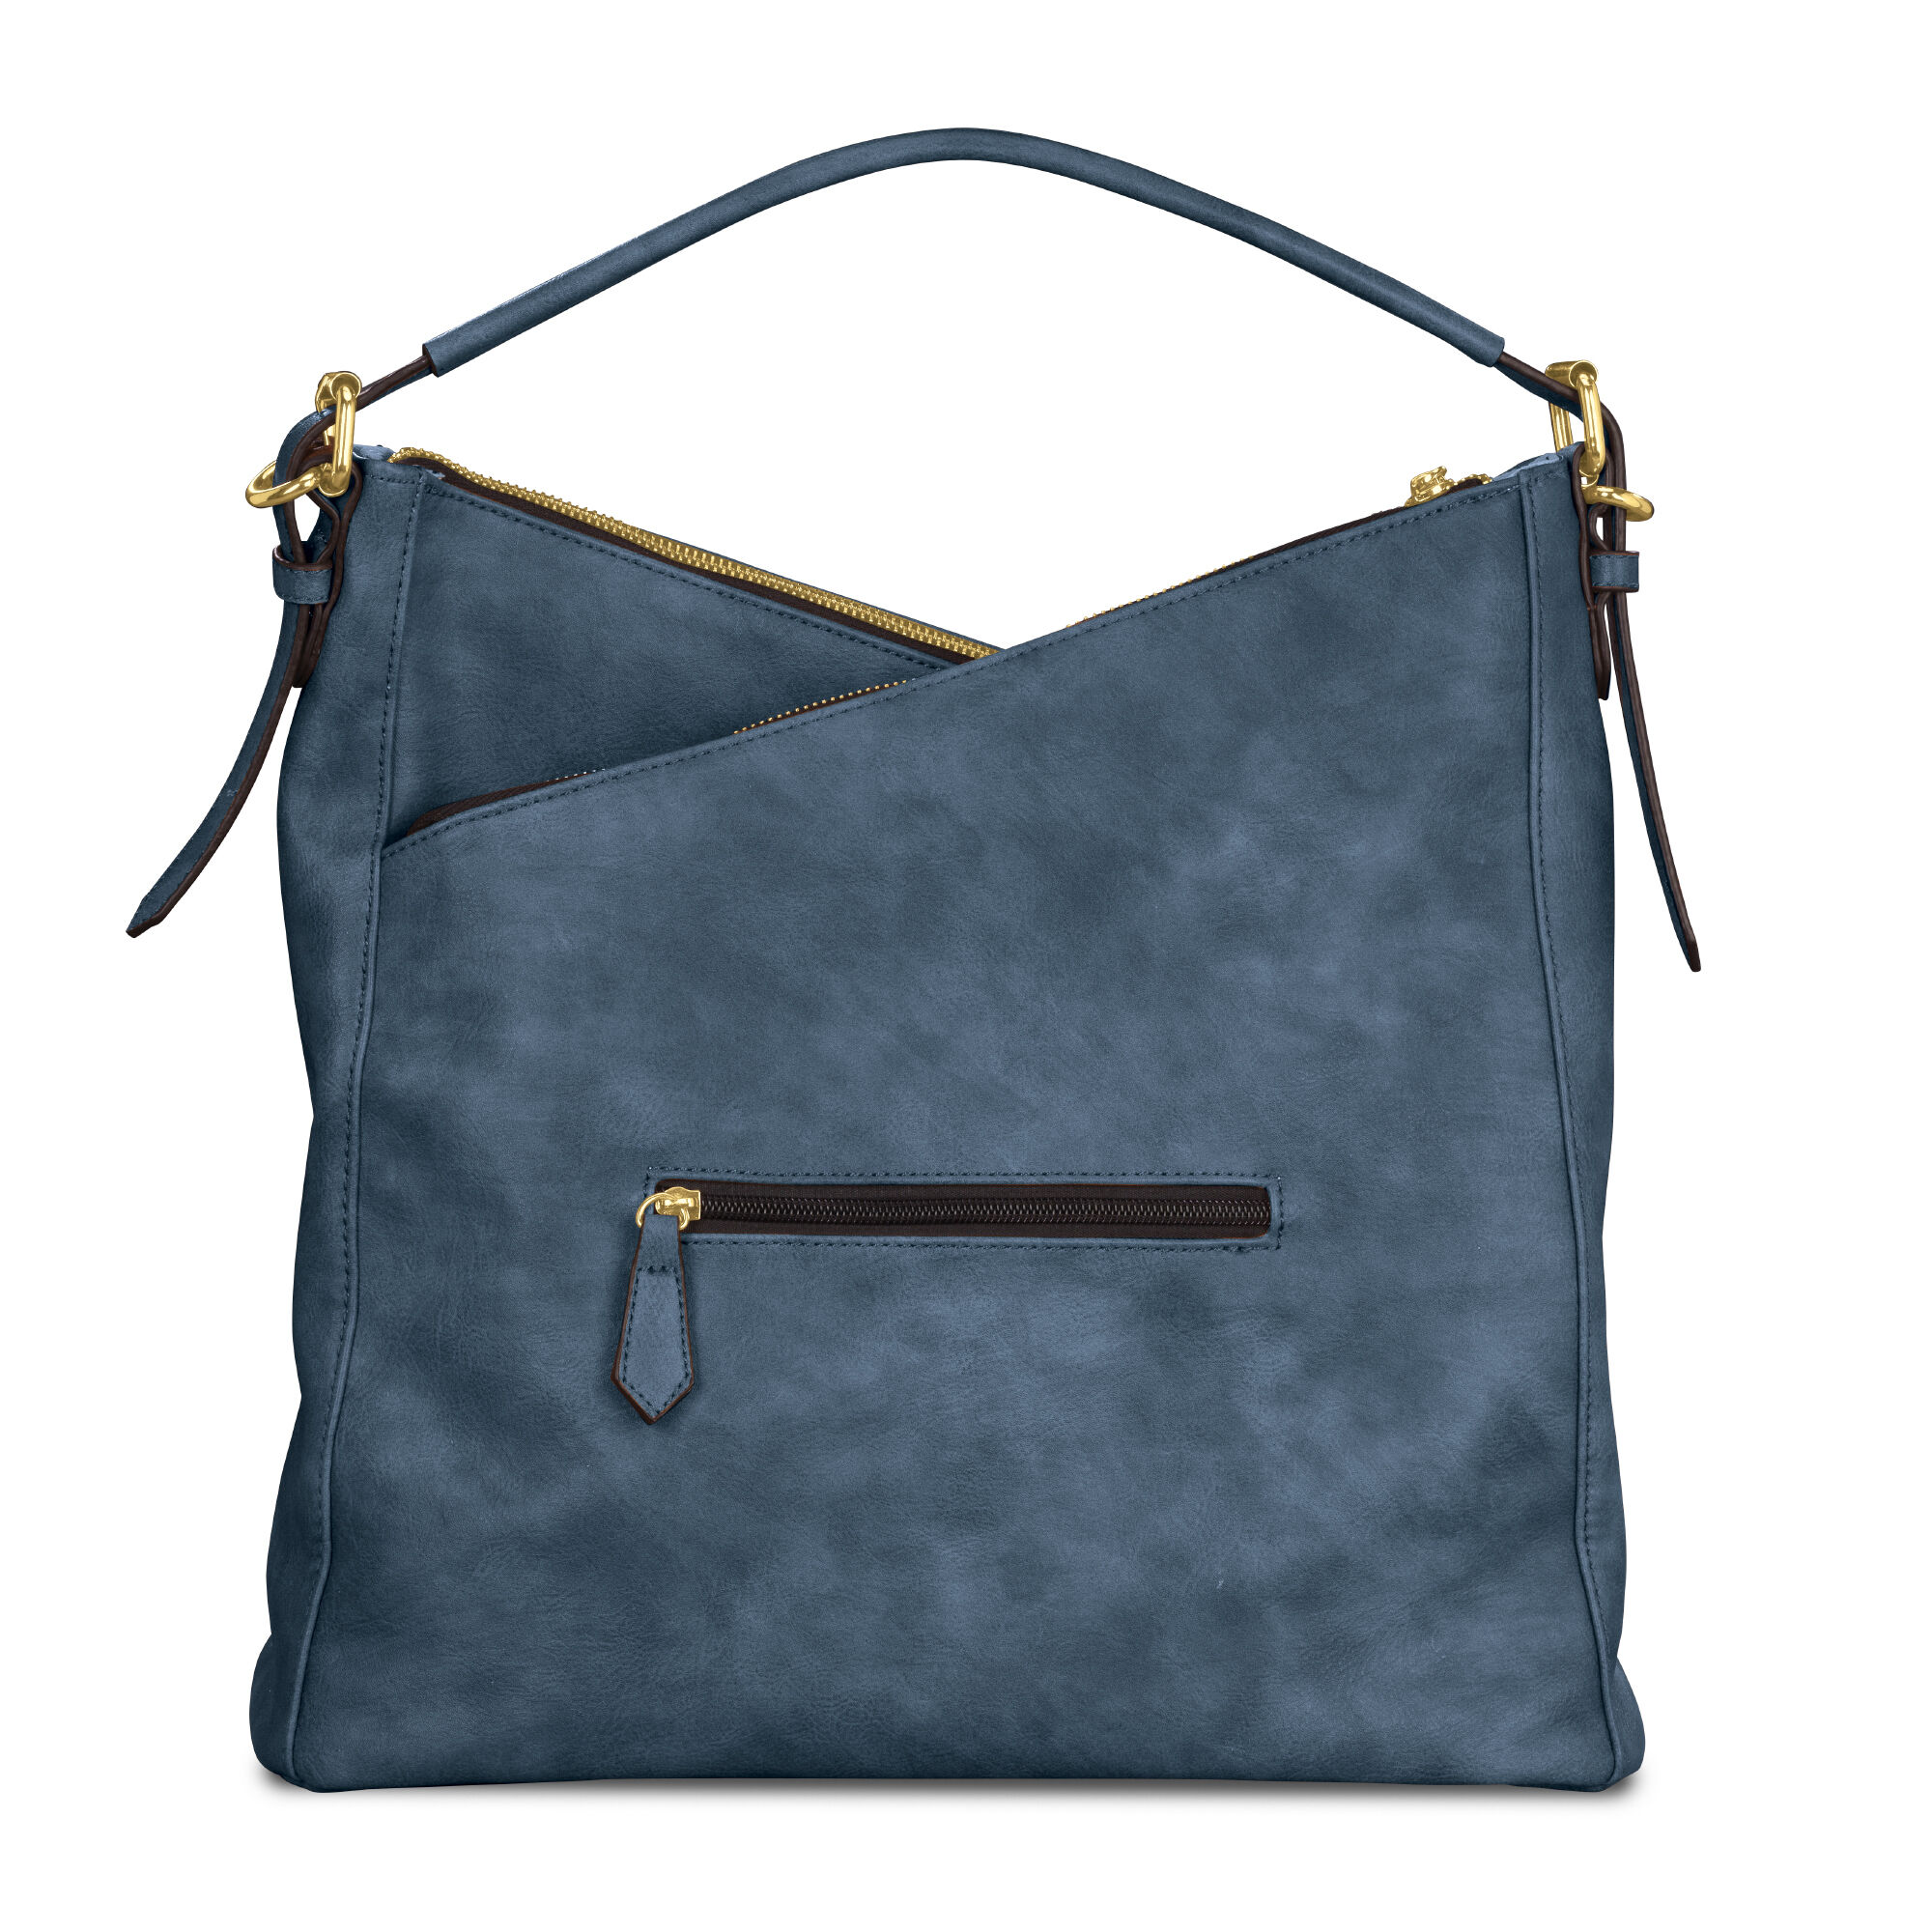 Everywhere Elegance Personalized Handbag 10335 0013 e bag